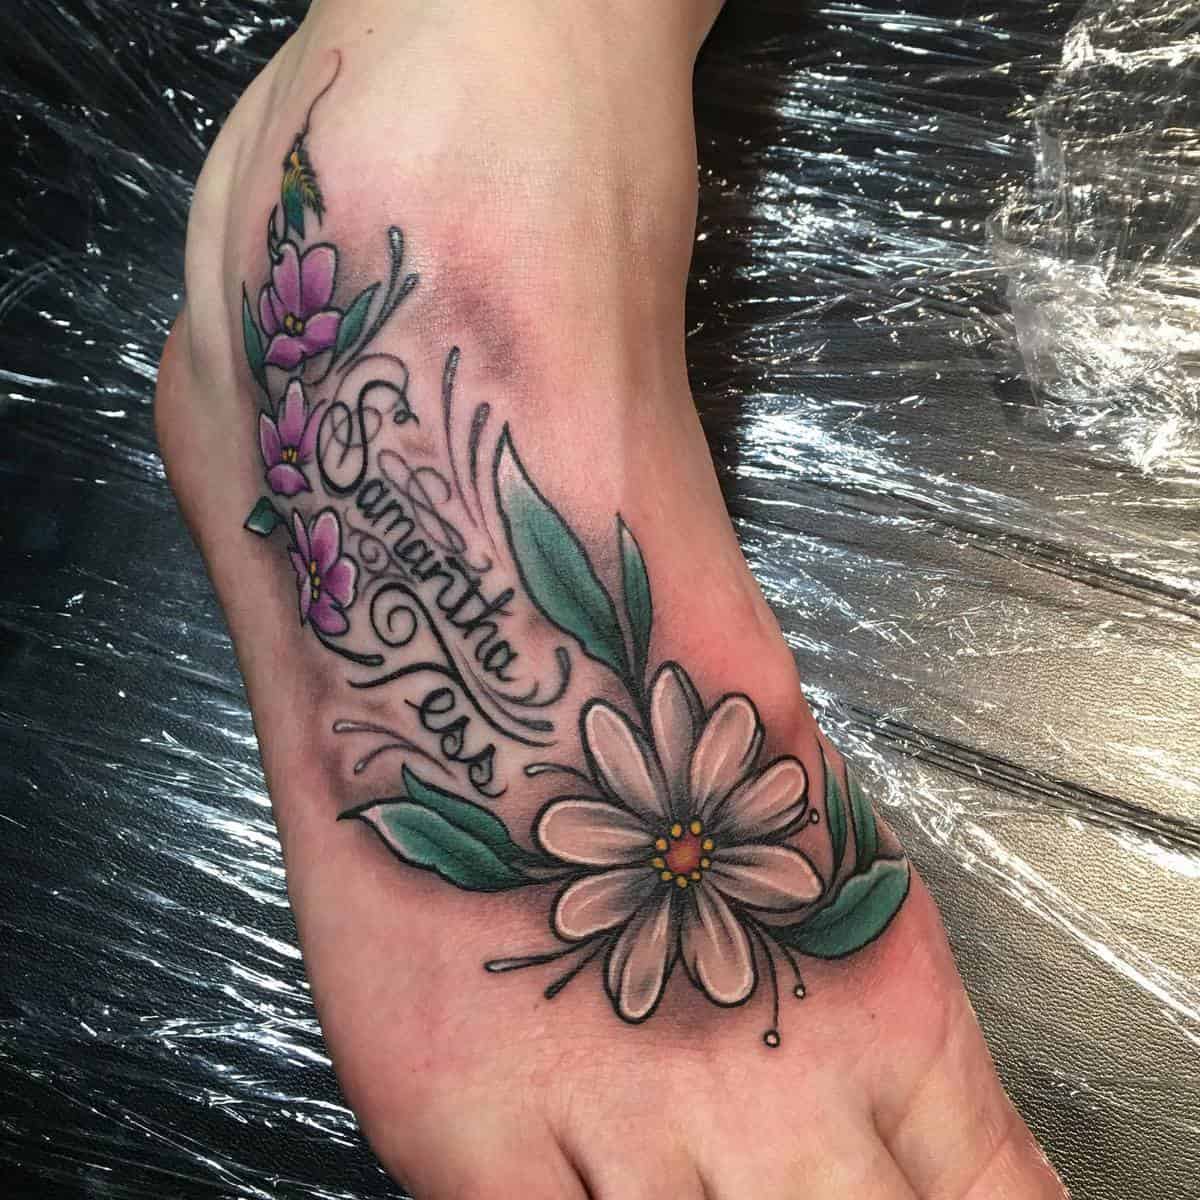 Foot Flower Tattoos dysfunktional_jake